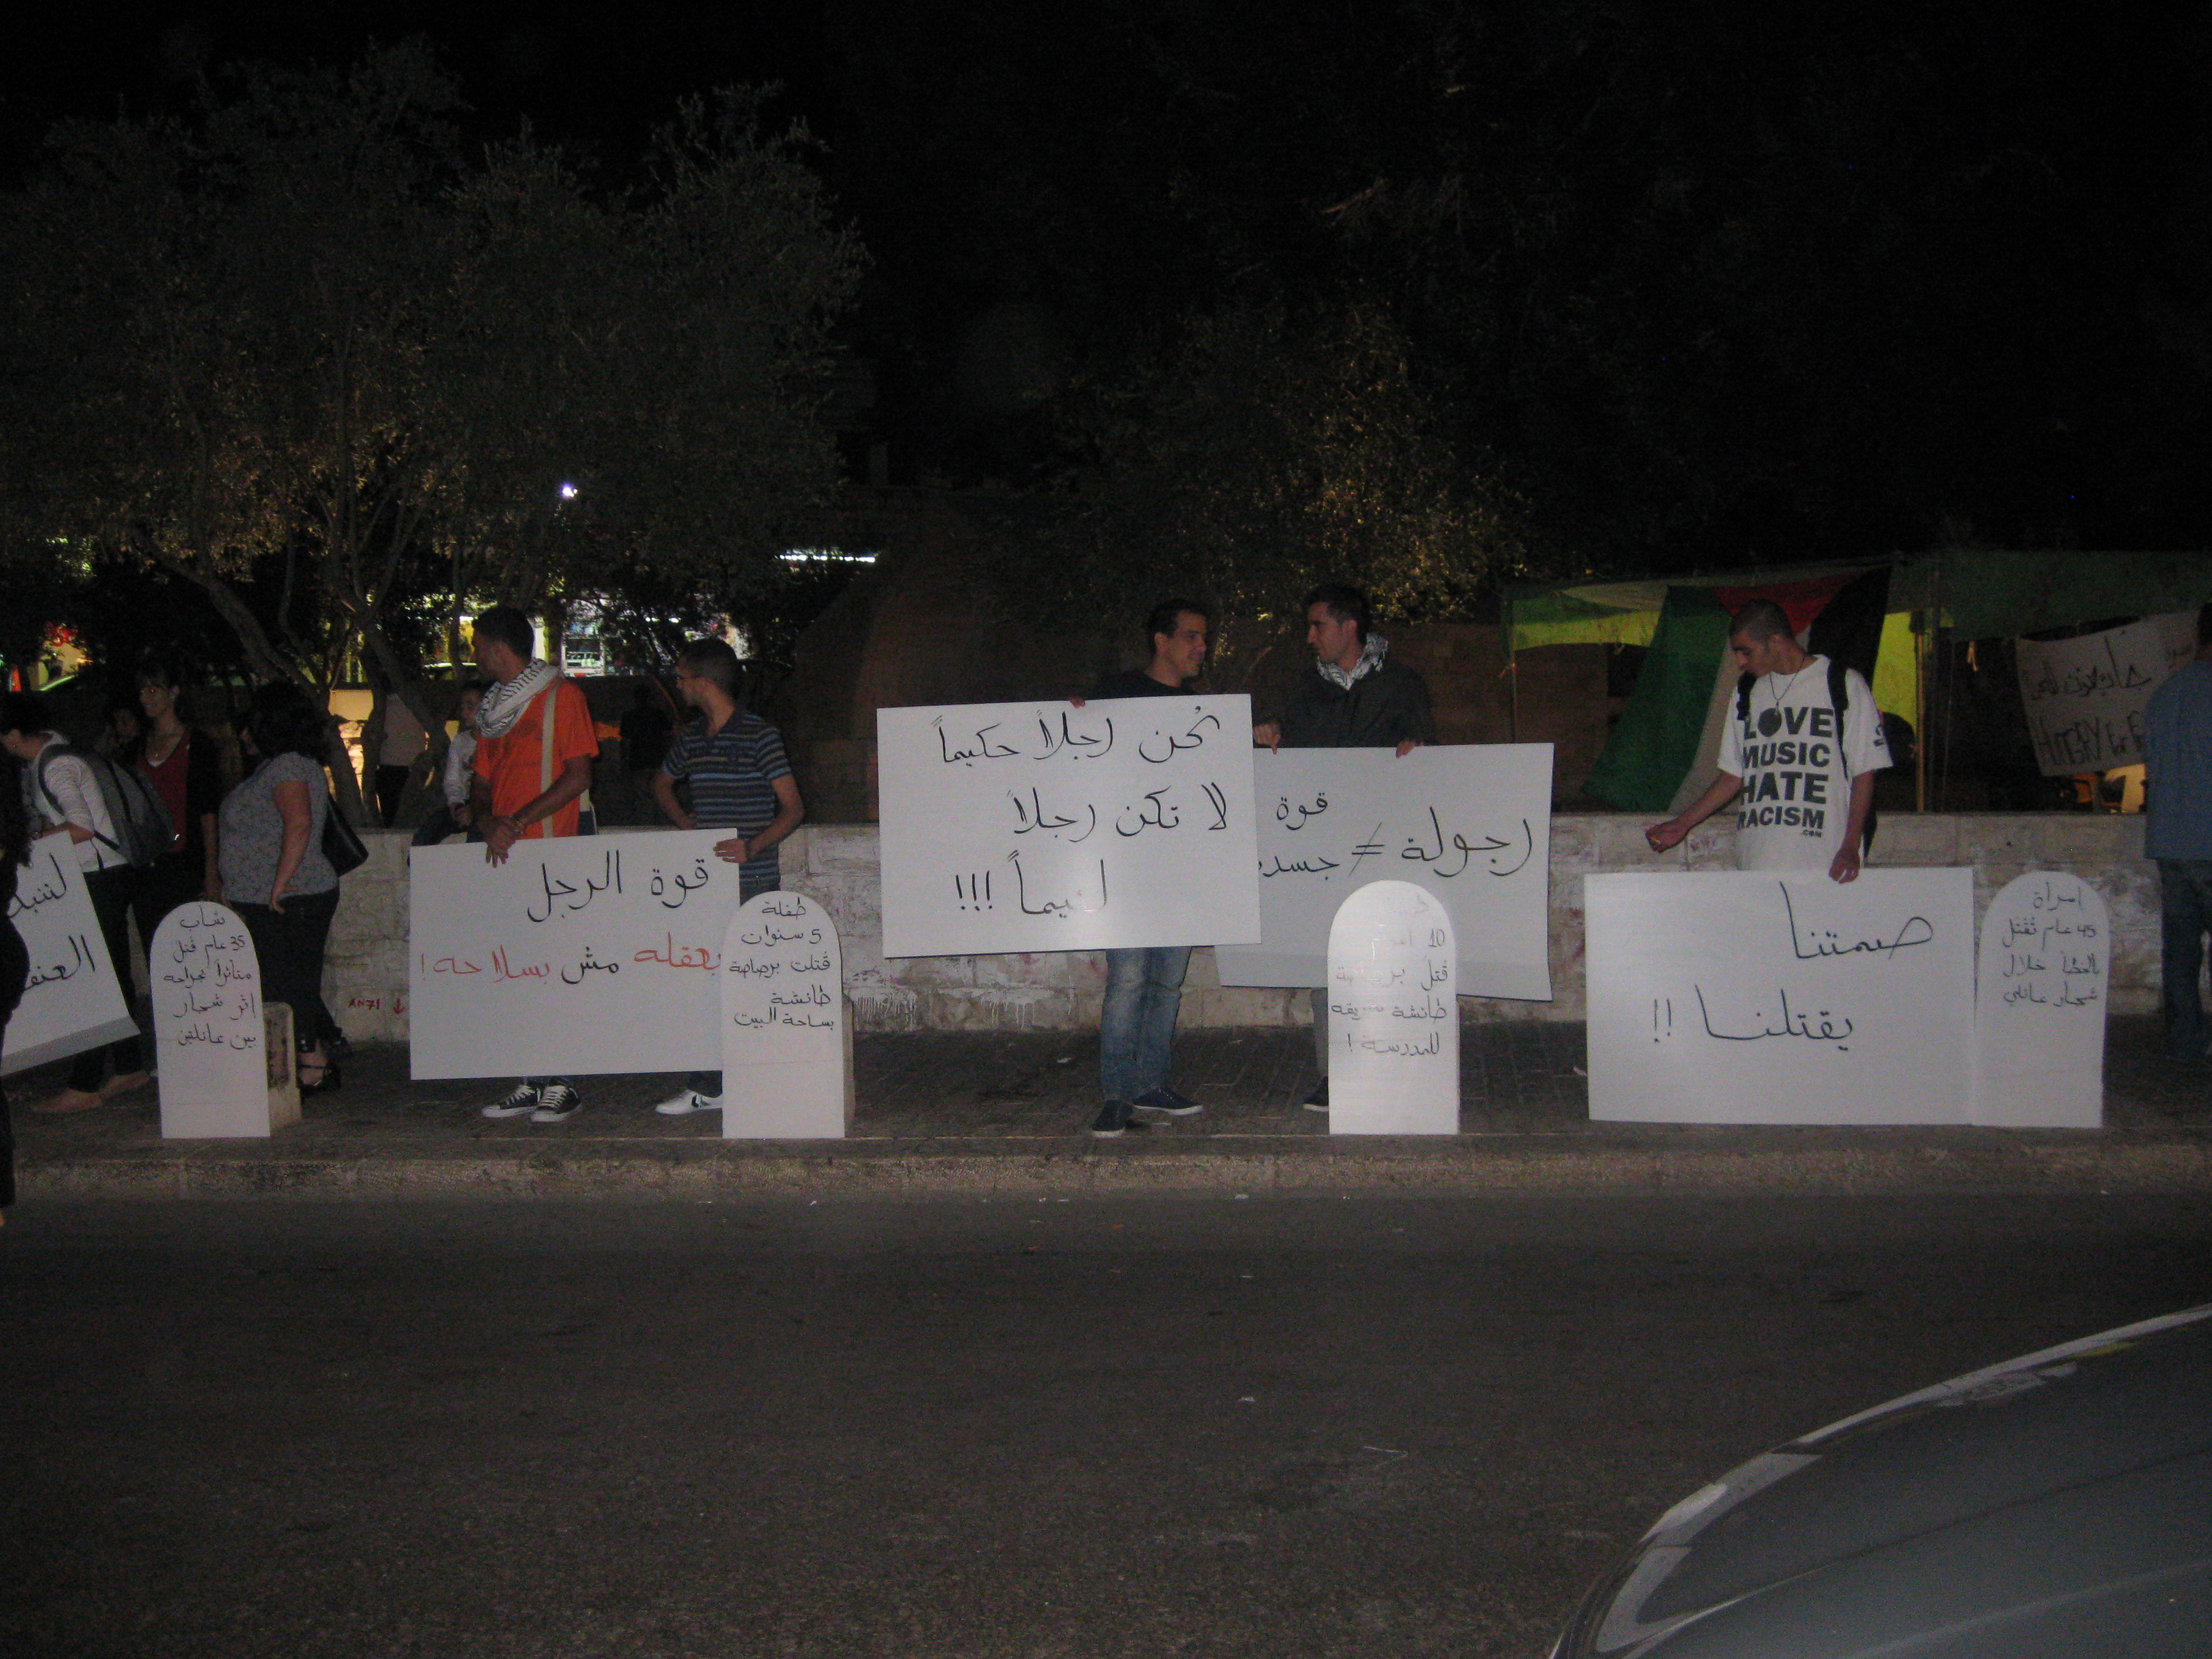 تظاهرة رفع شعارات تحت عنوان "حق كل إنسان أن يعيش بأمان"